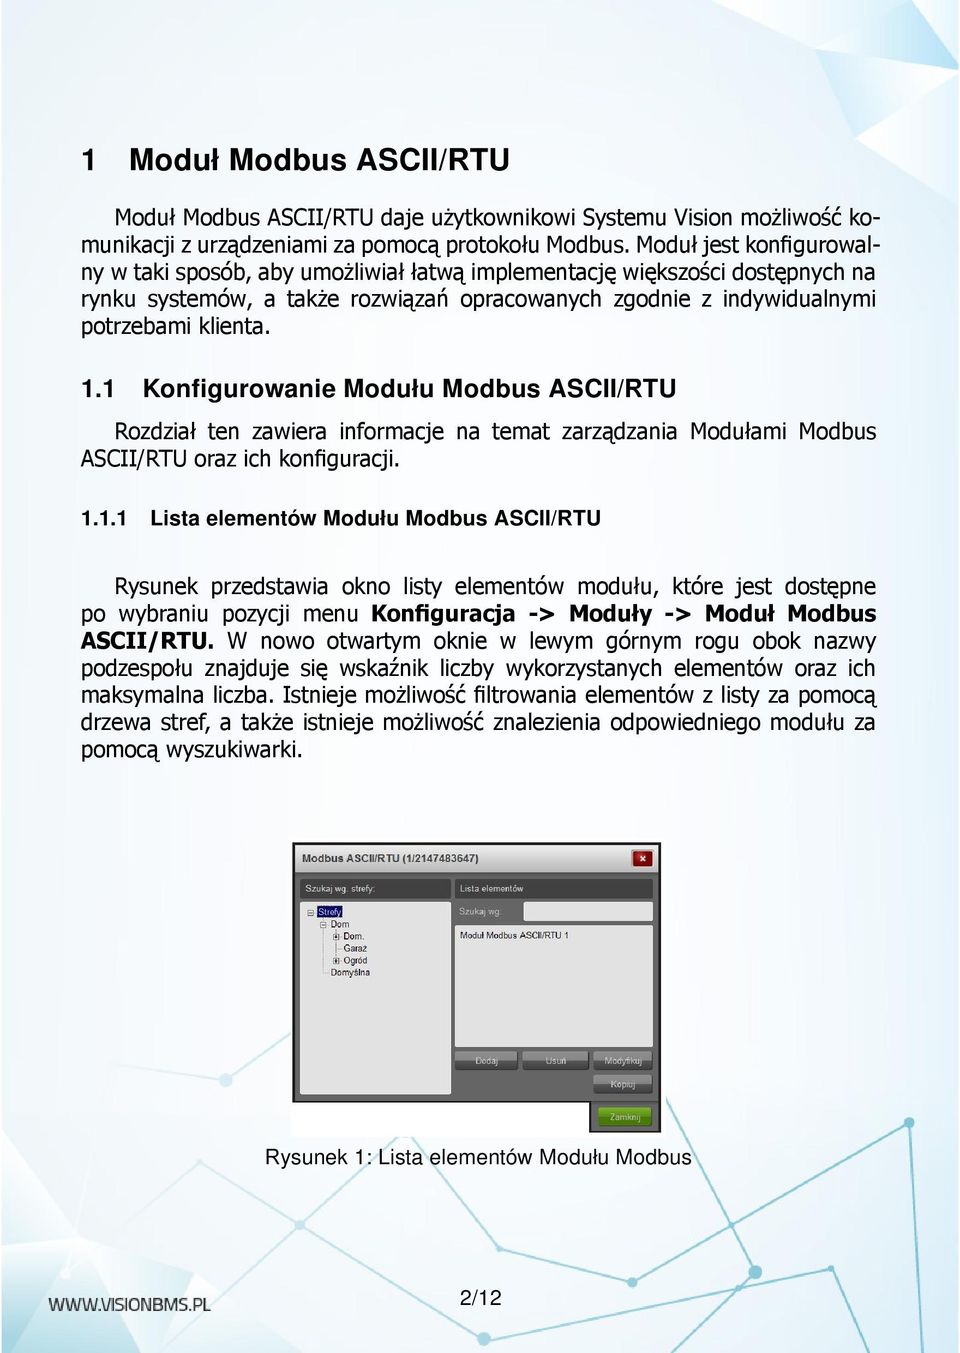 1 Konfigurowanie Modułu Modbus ASCII/RTU Rozdział ten zawiera informacje na temat zarządzania Modułami Modbus ASCII/RTU oraz ich konfiguracji. 1.1.1 Lista elementów Modułu Modbus ASCII/RTU Rysunek przedstawia okno listy elementów modułu, które jest dostępne po wybraniu pozycji menu Konfiguracja -> Moduły -> Moduł Modbus ASCII/RTU.